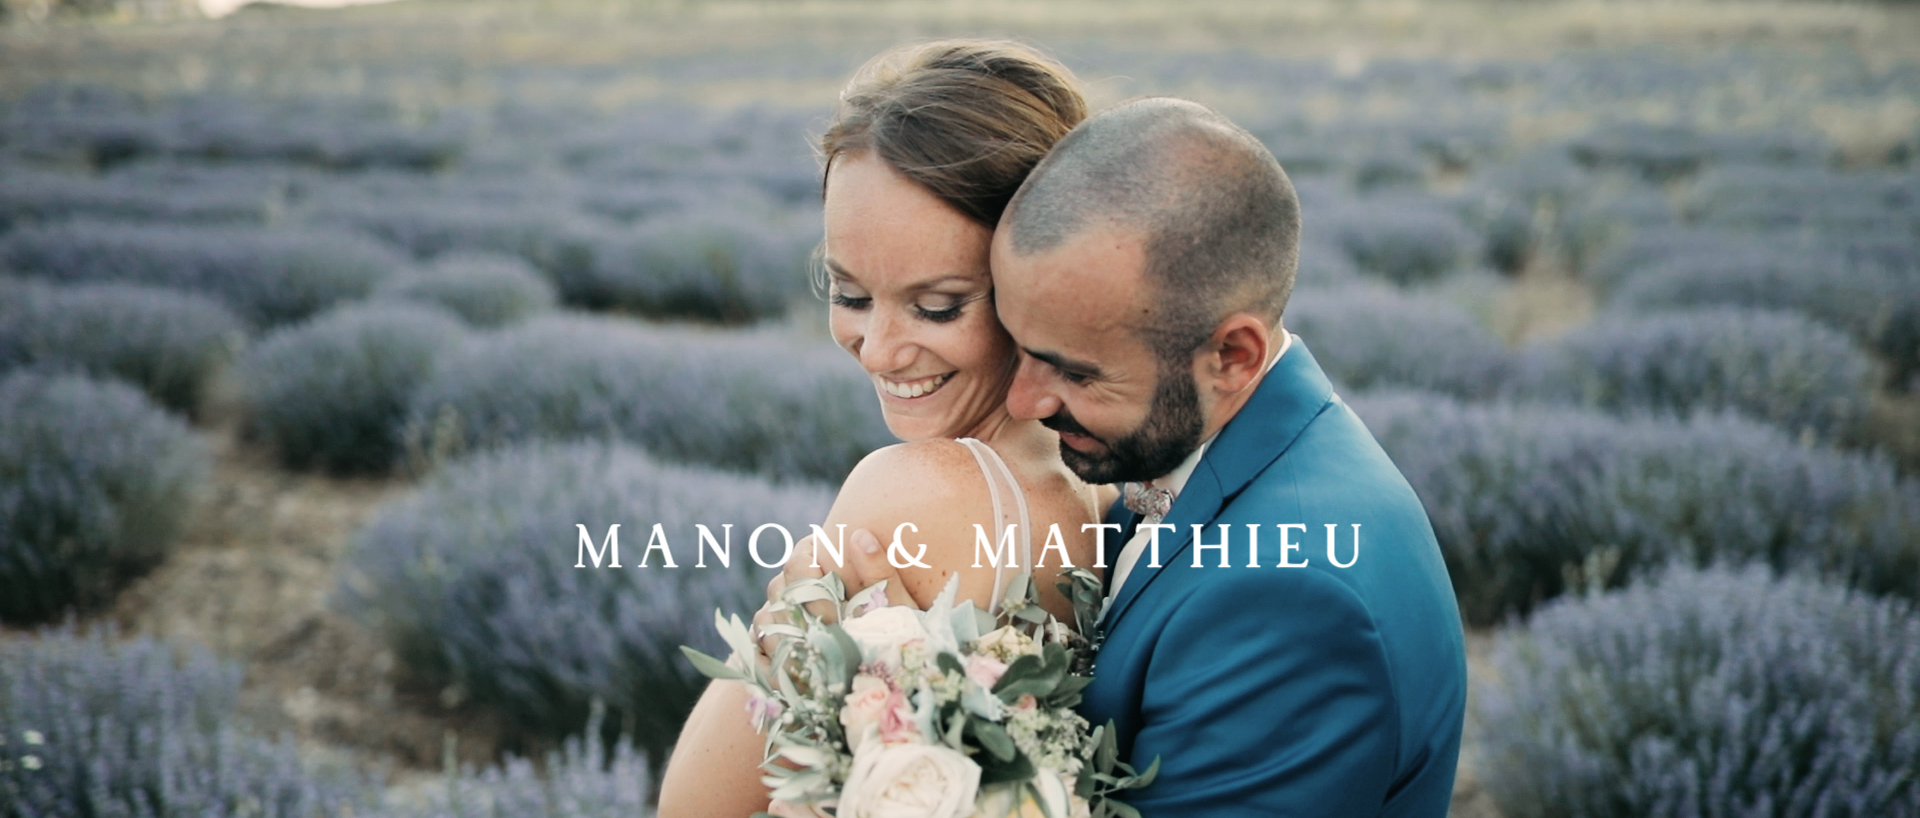 Manon & Matthieu Film de mariage dans le Gard